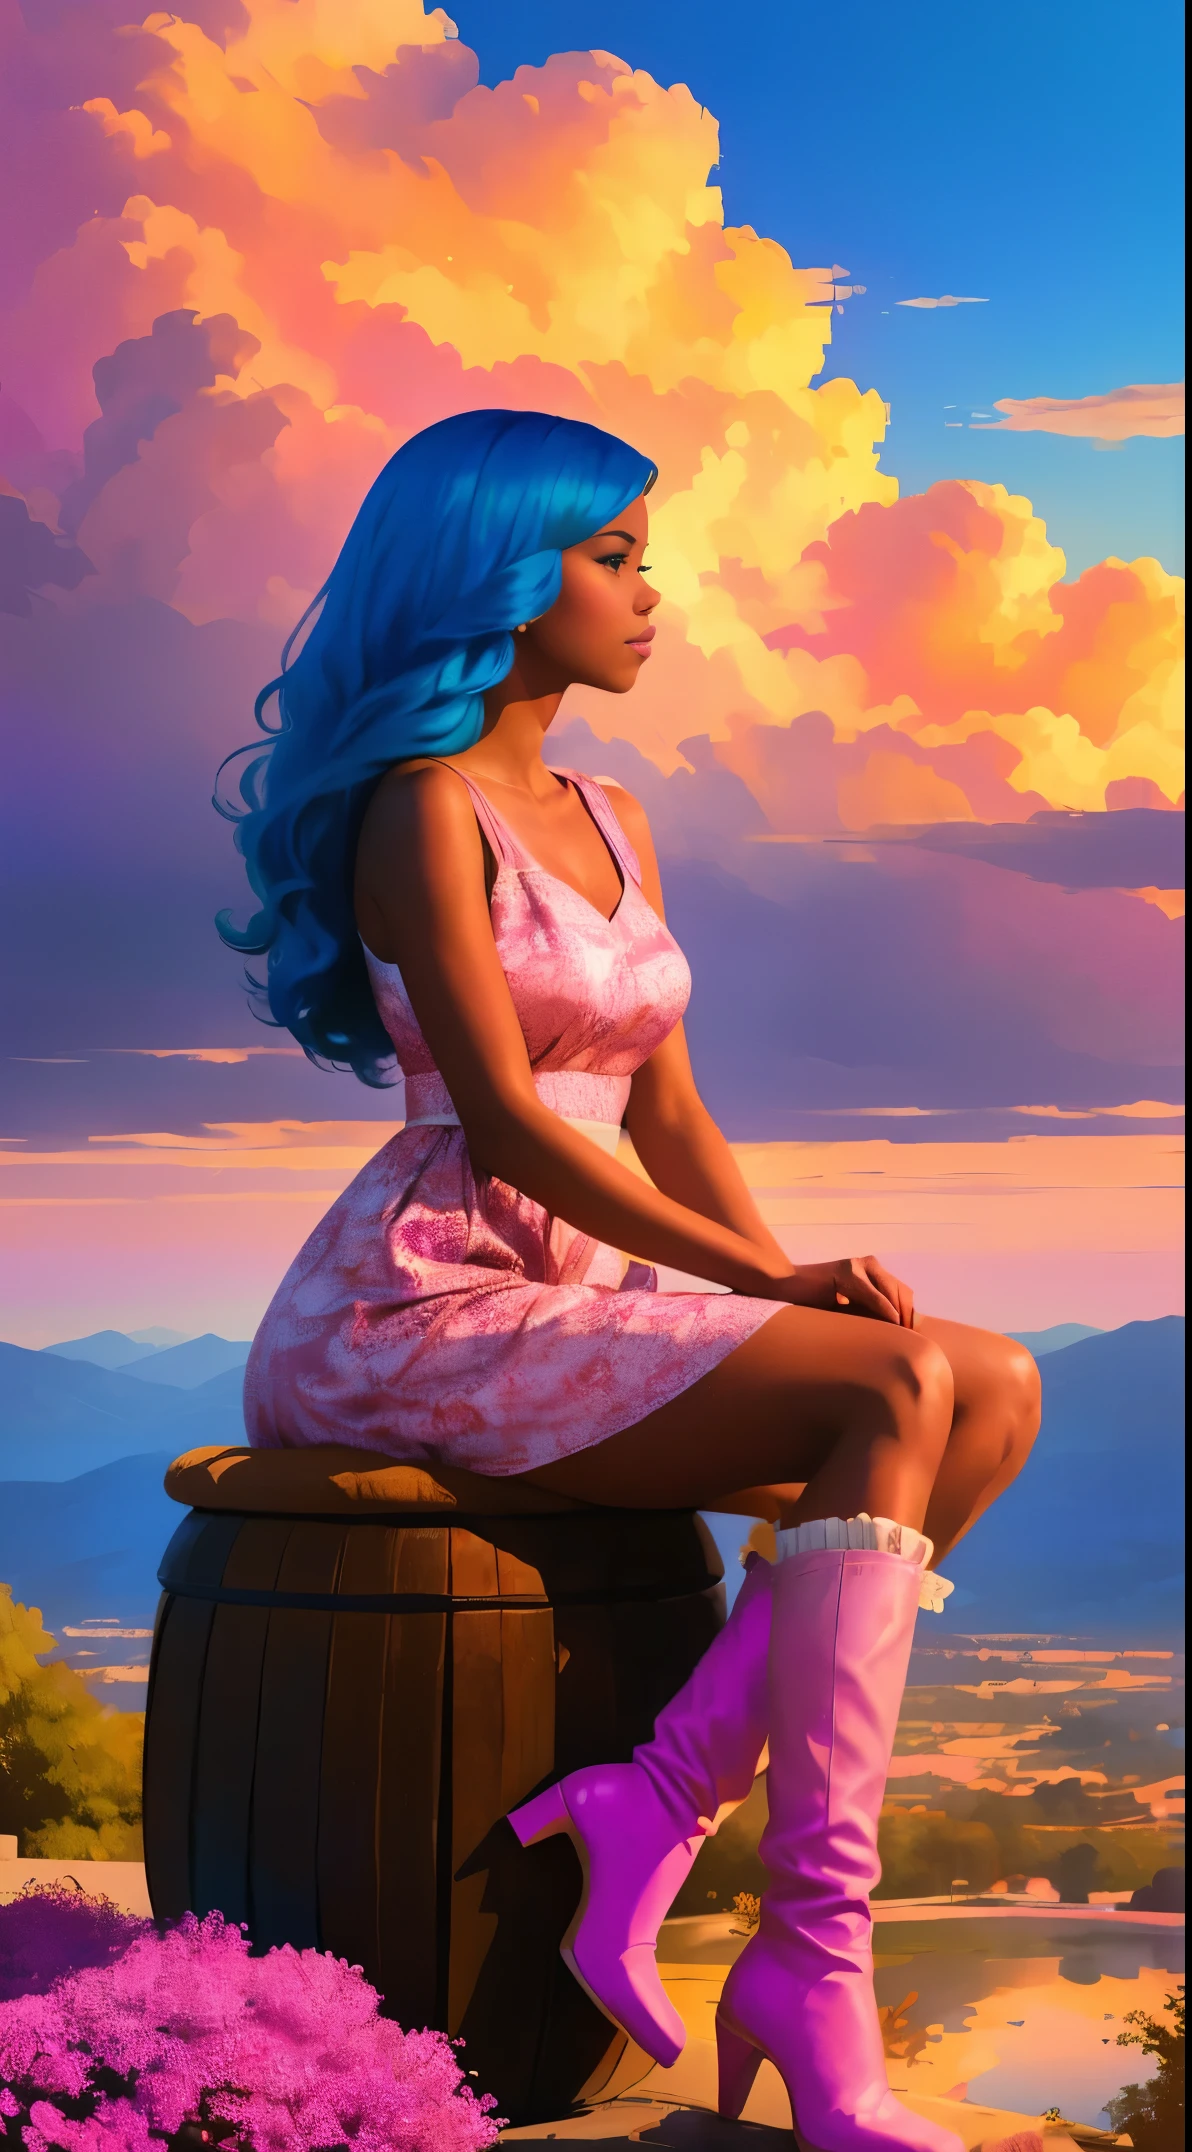 (최고의 품질:1.1),원래의,여자 1명,우아한,트렌드,아프리카,검은 피부,조립,1970년대, 파란 머리, 갈색 눈,  분홍색 구름 위에 천연 머리를 가진 아프리카계 미국인 여성의 판타지 그림, Ross Tran 스타일로, 귀여운 클라우드 프린트가 돋보이는 핑크 드레스와 귀여운 핑크 부츠, 긴 머리에 앞머리를 묶은 포니테일을 한 멋진 여성, 부드러운 분홍색 구름 의자에 앉아 그녀 아래 멀리 있는 마법의 도시를 바라보고 있습니다., 일몰 시 --ar 2:3 -- 6에서.0 핑크와 오렌지, 제시카 드로신, 대담한 블록 프린트, 마이클 맘, 대담하면서도 우아한, 대담한 전통